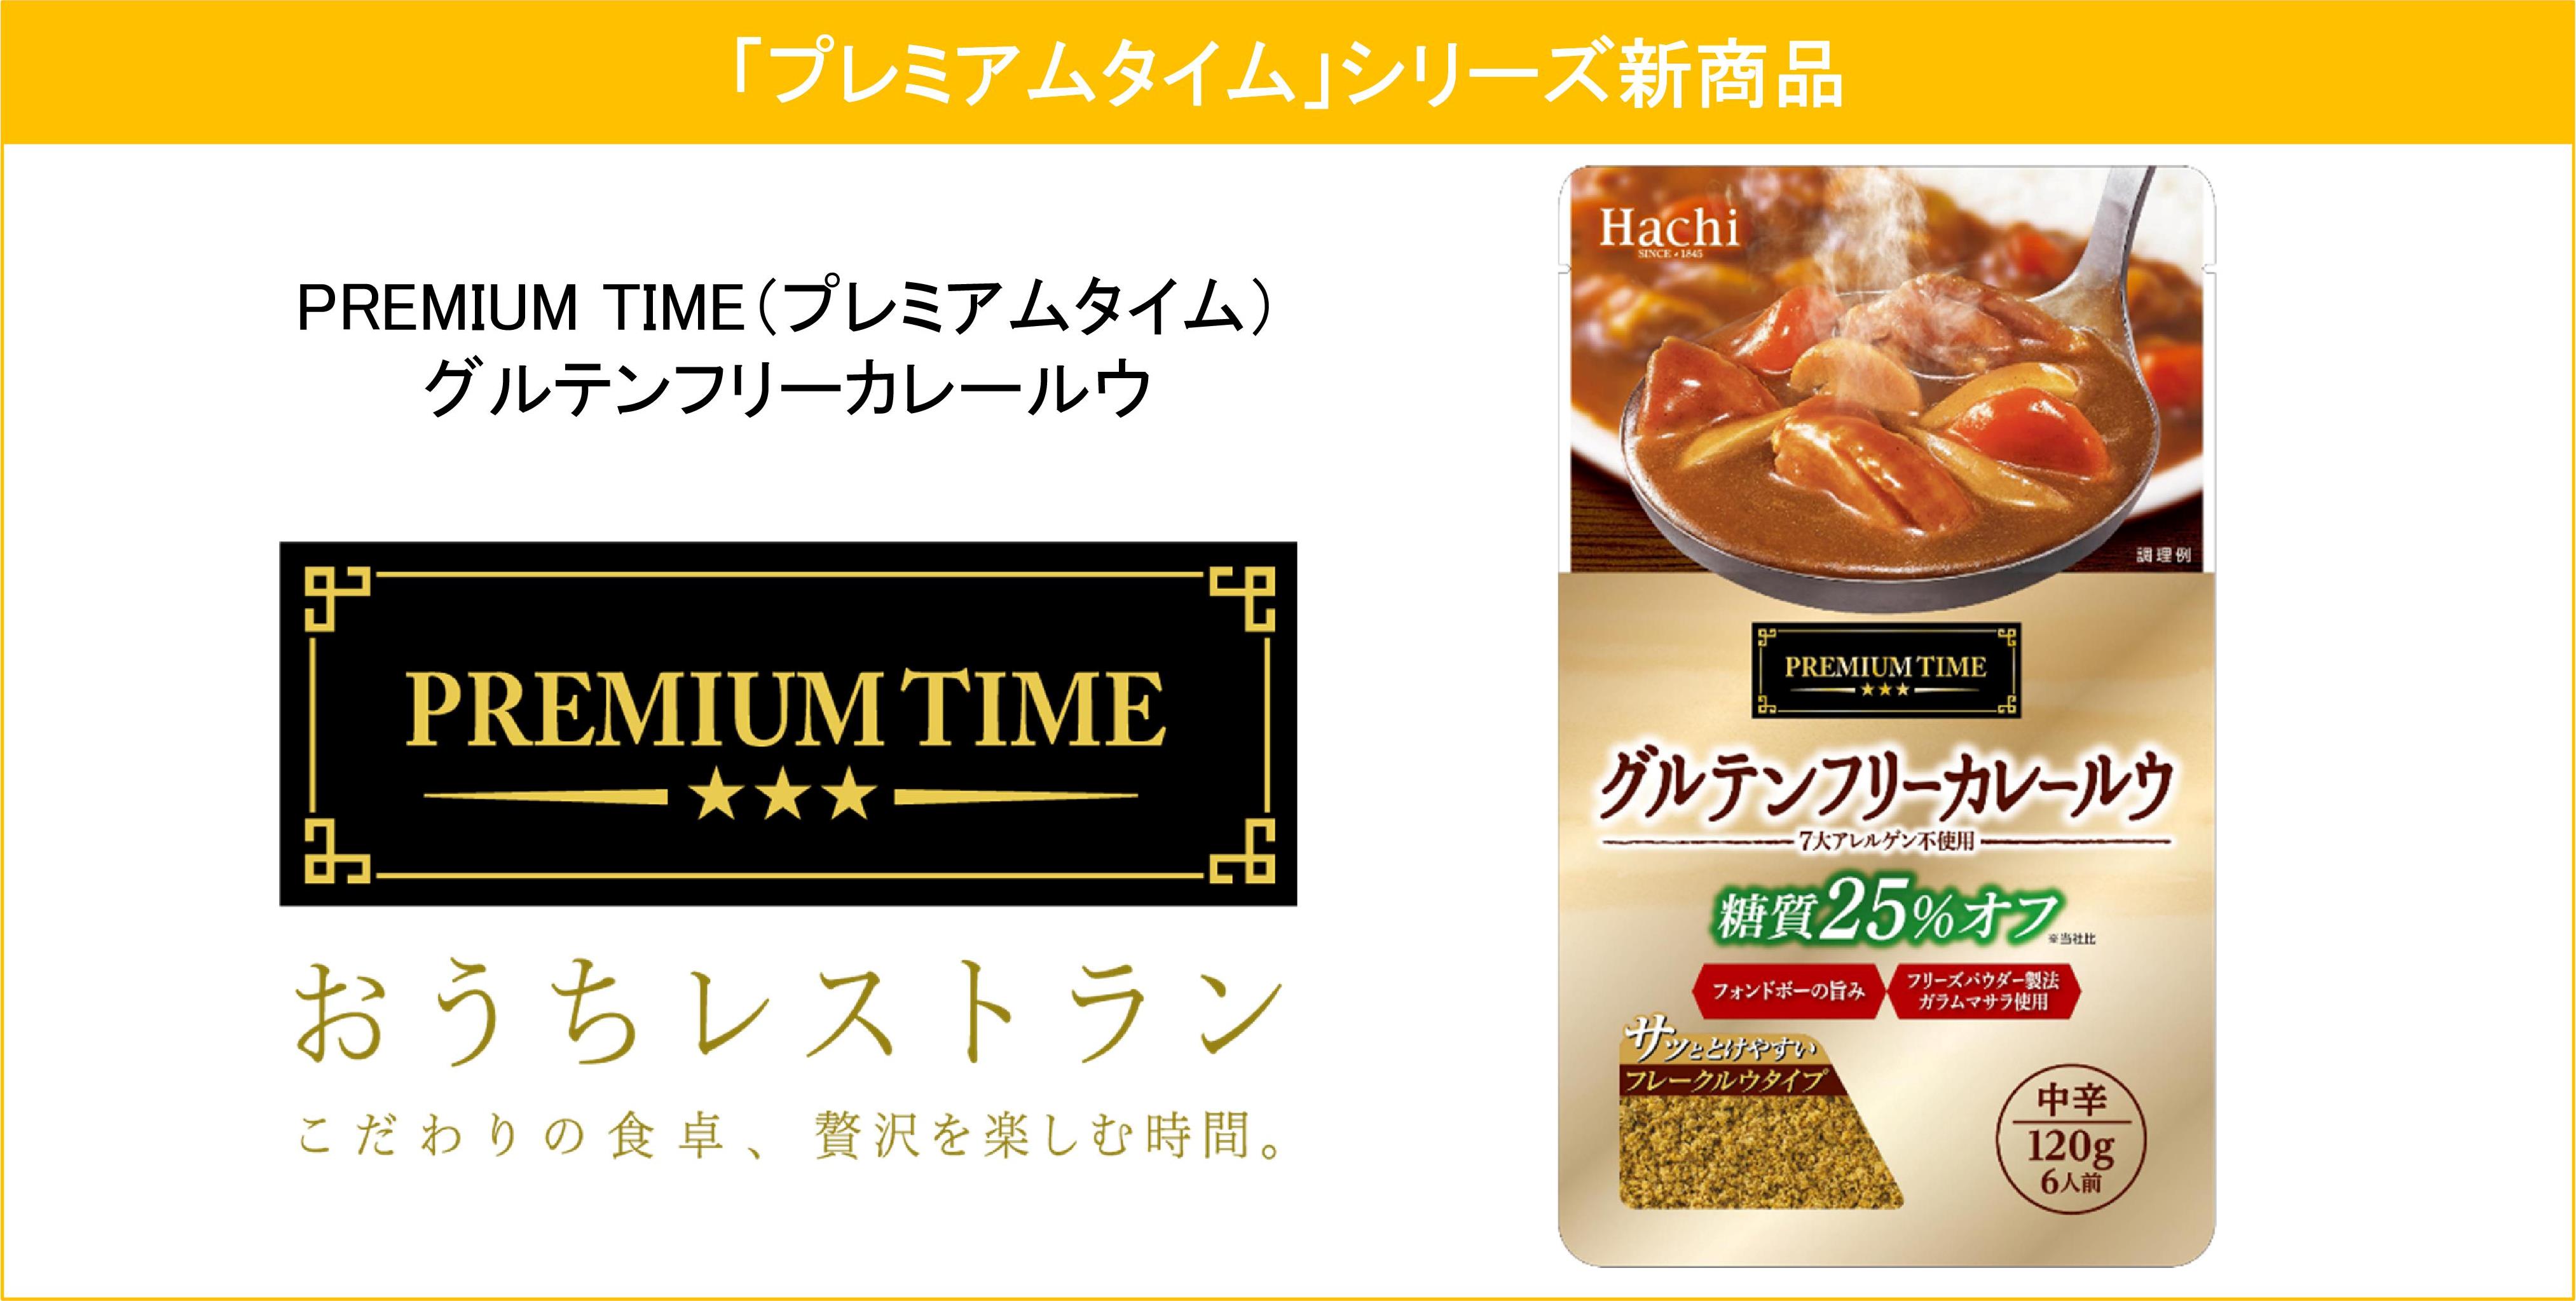 糖質25 オフの グルテンフリーカレールウ が プレミアムタイム シリーズより21年2月22日に発売 ハチ食品 Hachi のレトルトカレー レトルト食品